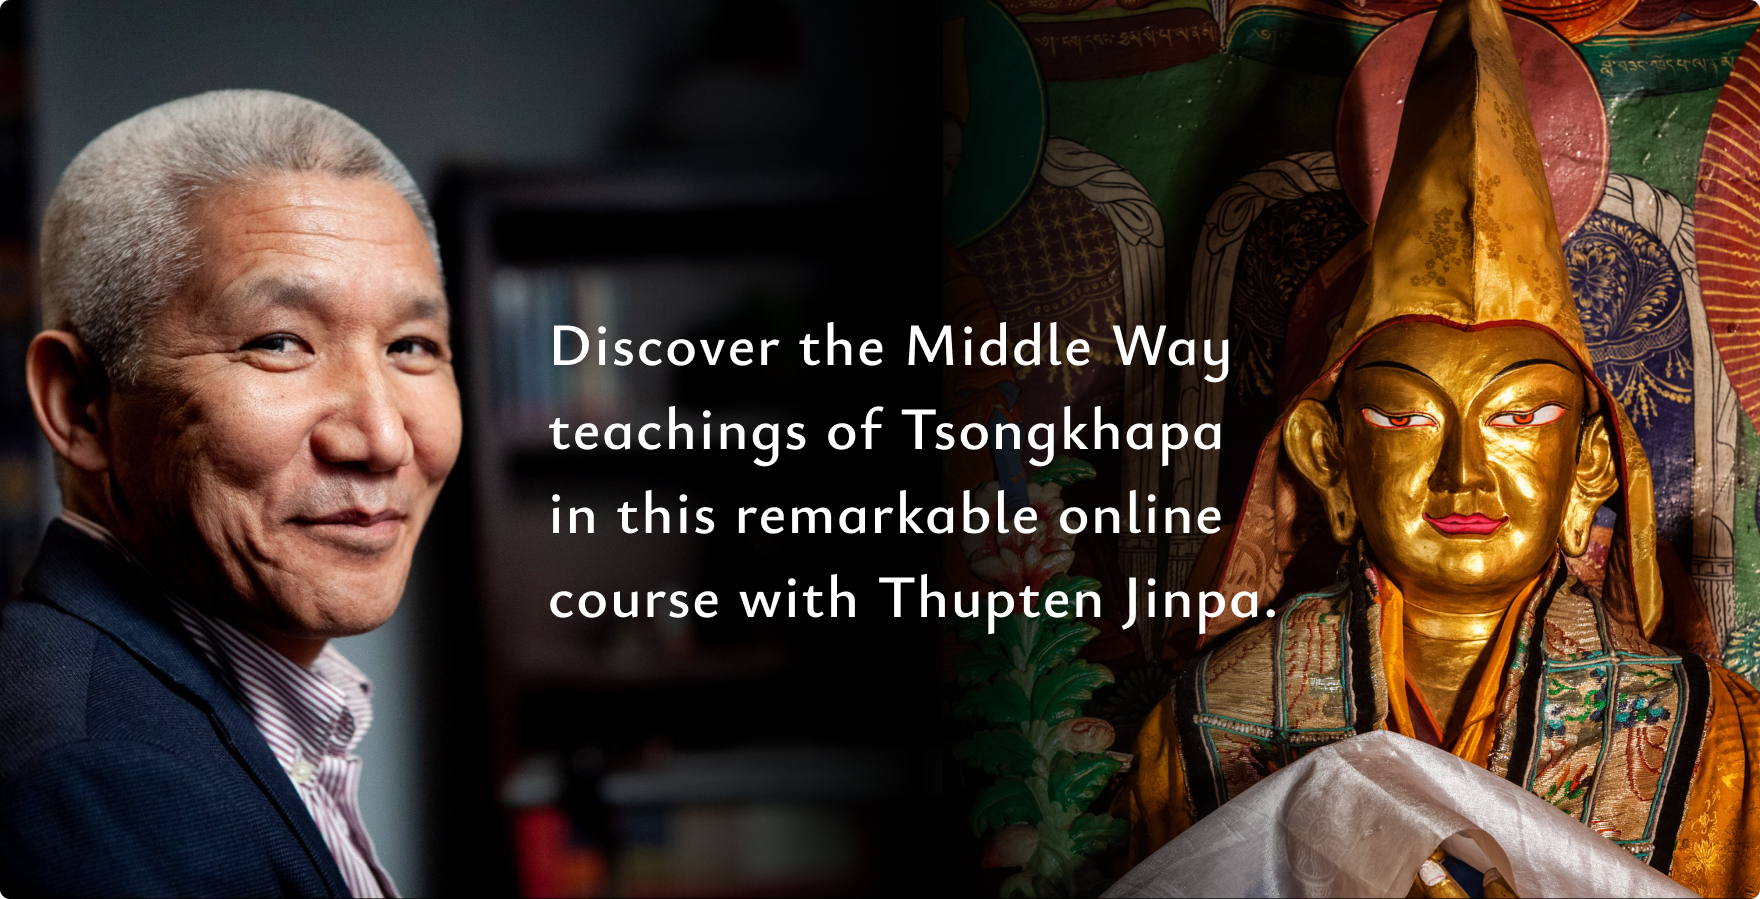 Thupten Jinpa online course Tsongkhapa